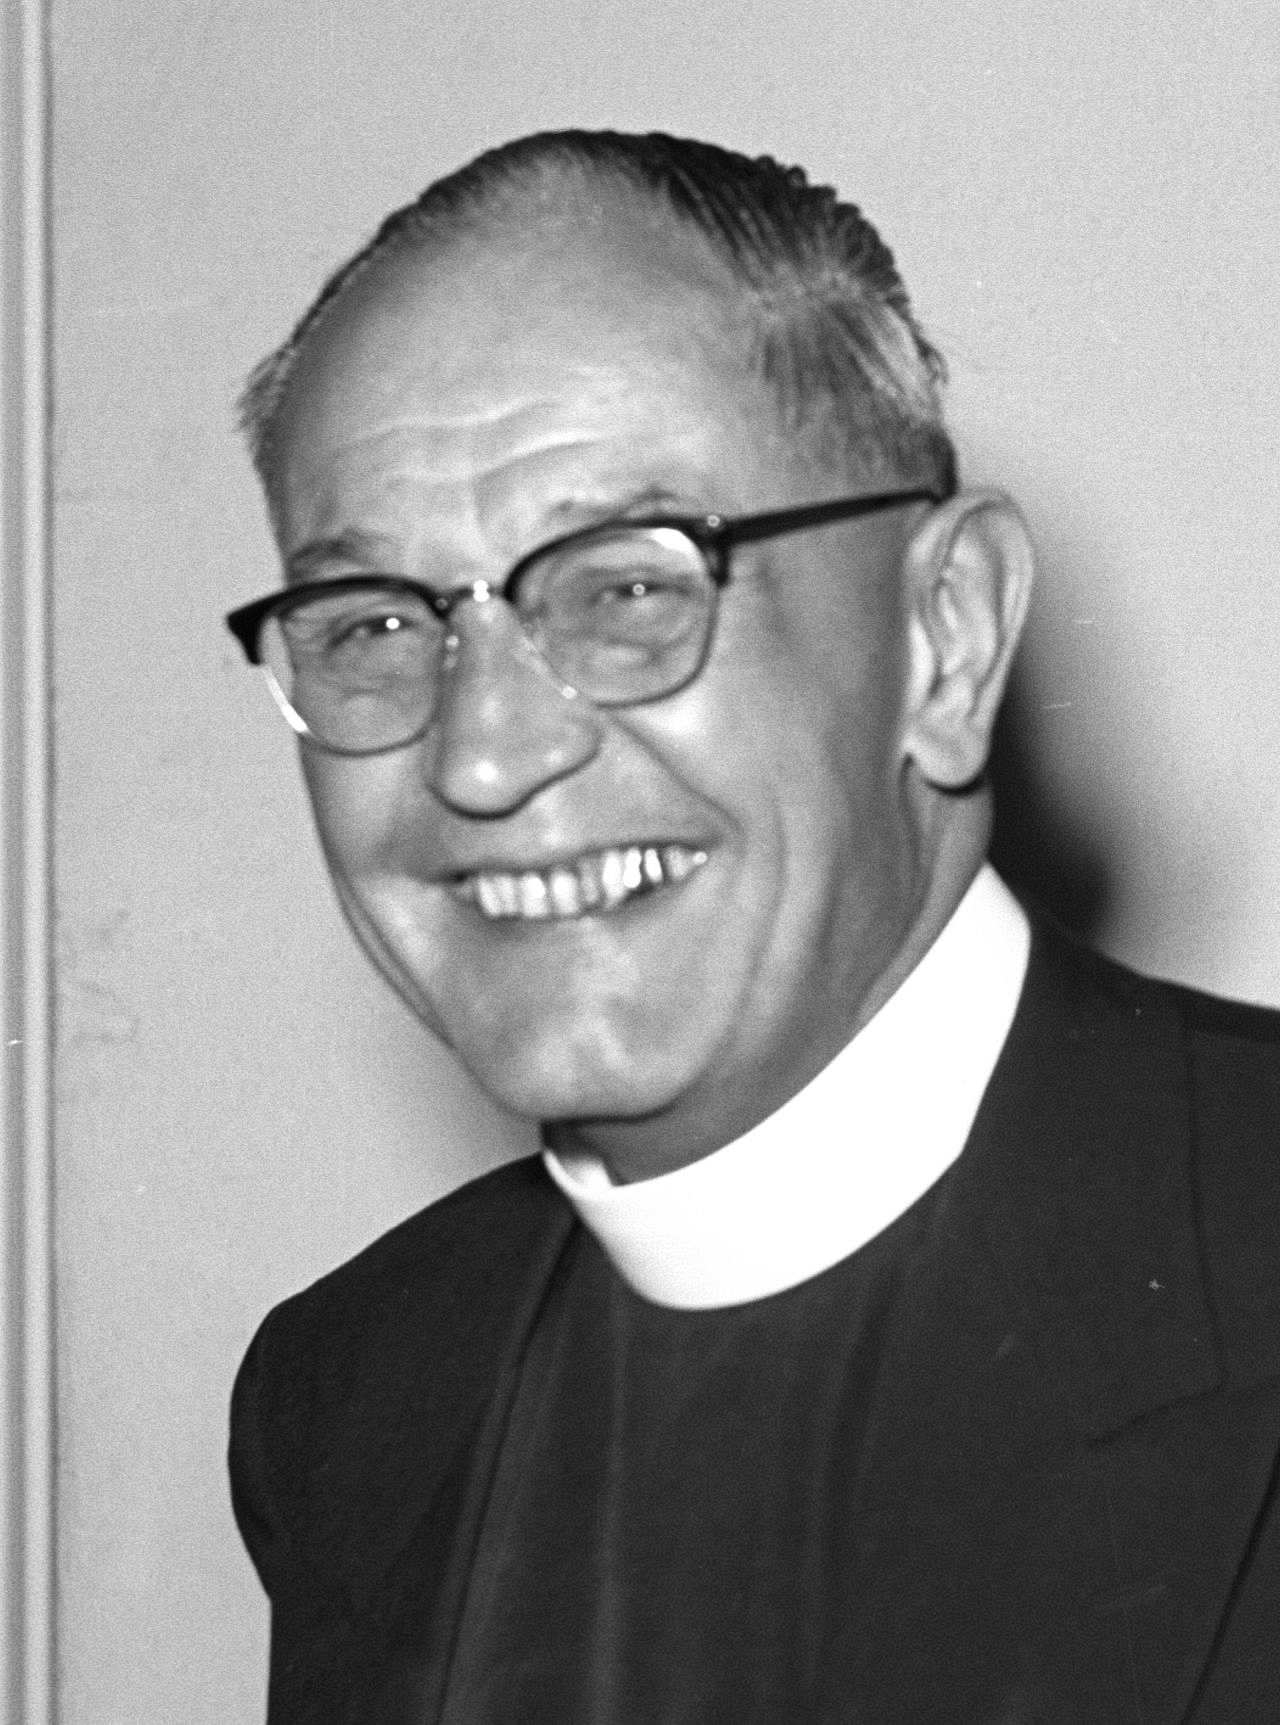 Fotografie von Martin Niemöller, Kirchenpräsident von Hessen, 1956.